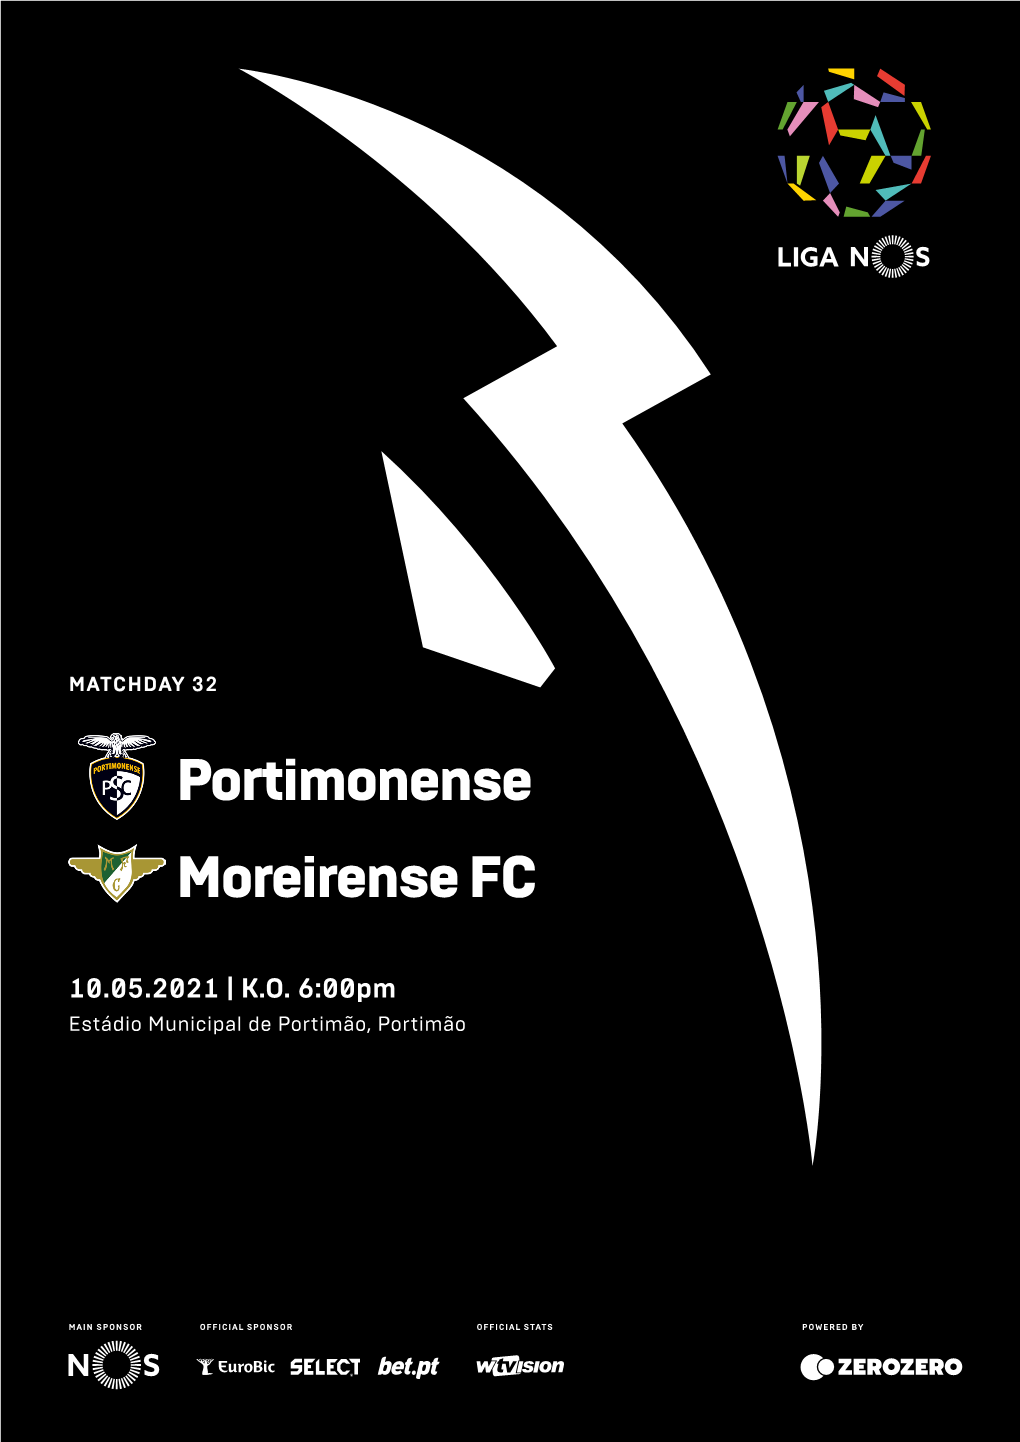 Portimonense Moreirense FC